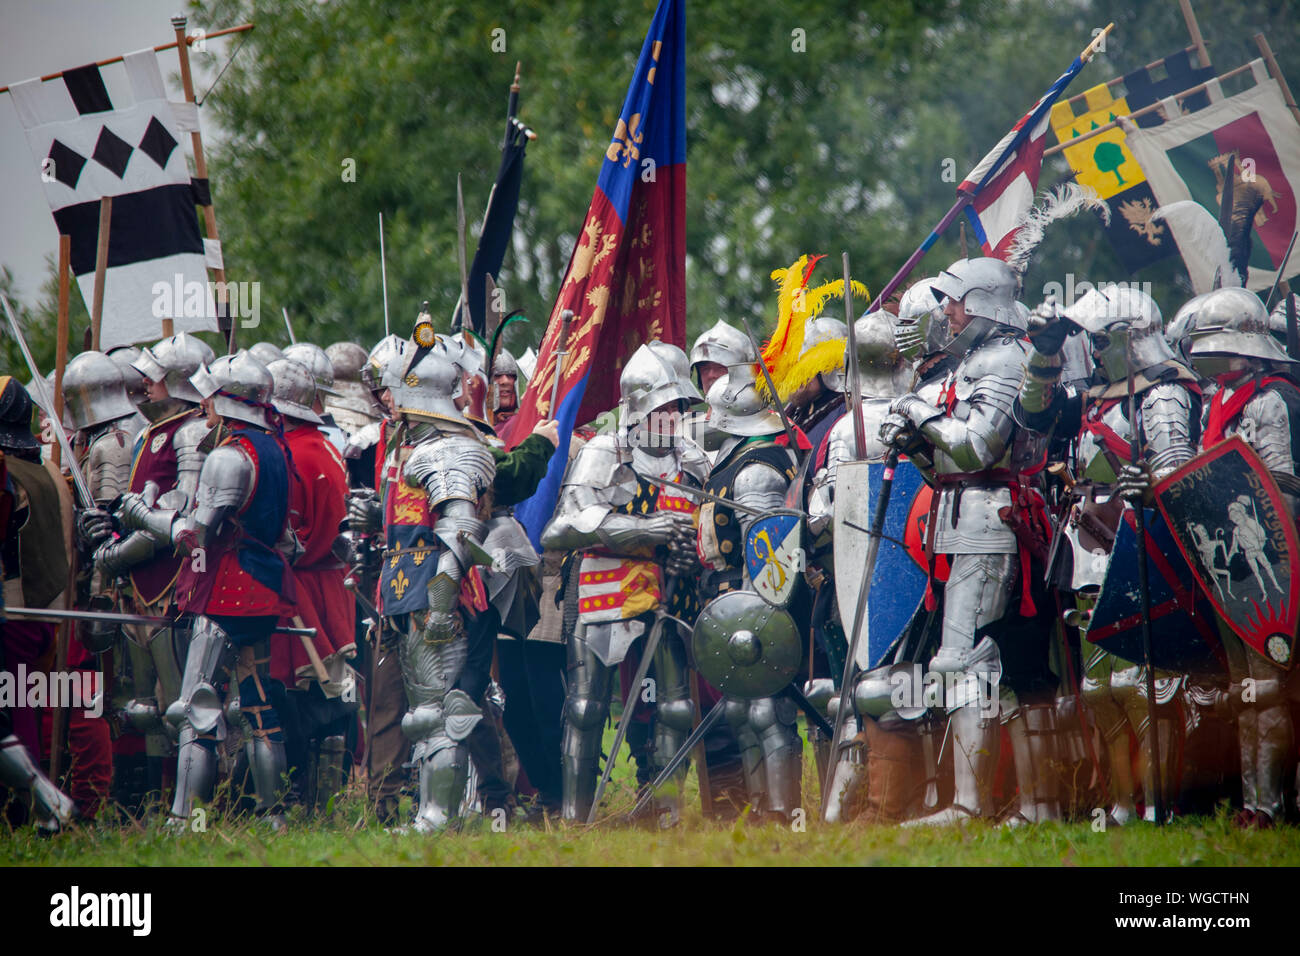 Armado de caballeros para la batalla - Festival Medieval de Tewkesbury 2019 Foto de stock